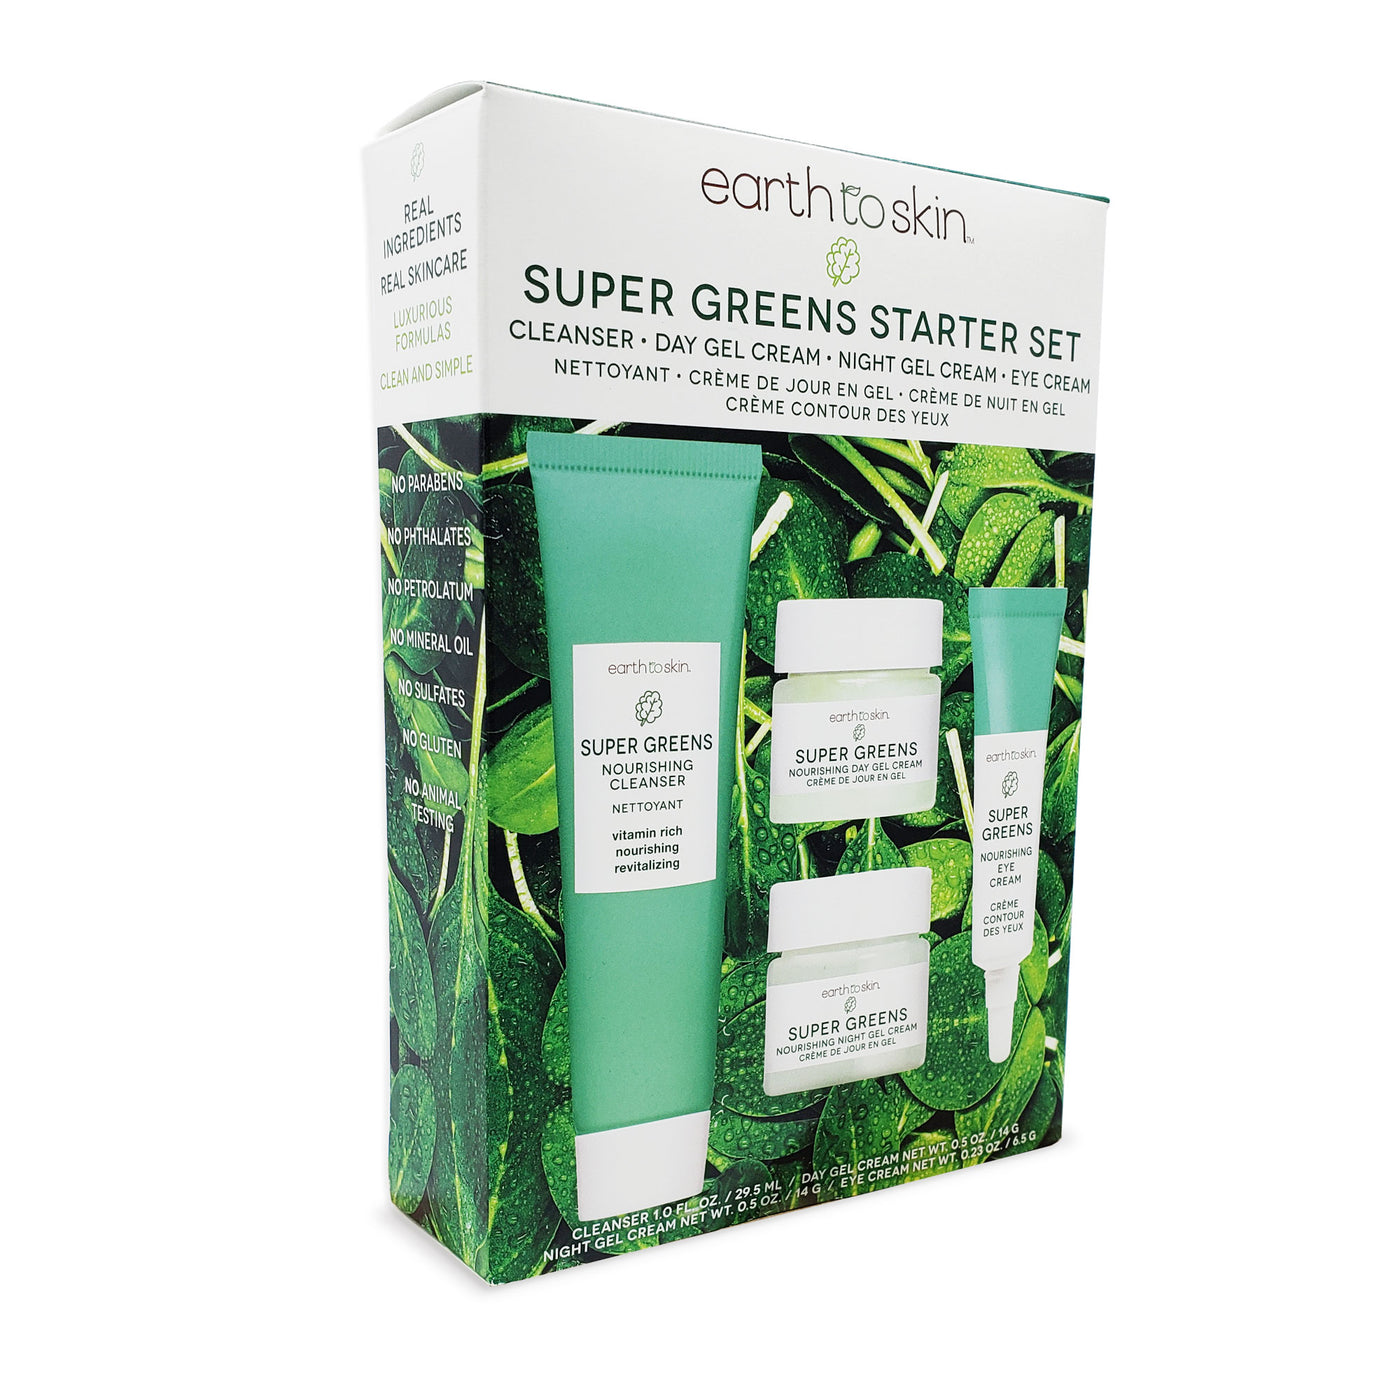 Super Greens Starter Set